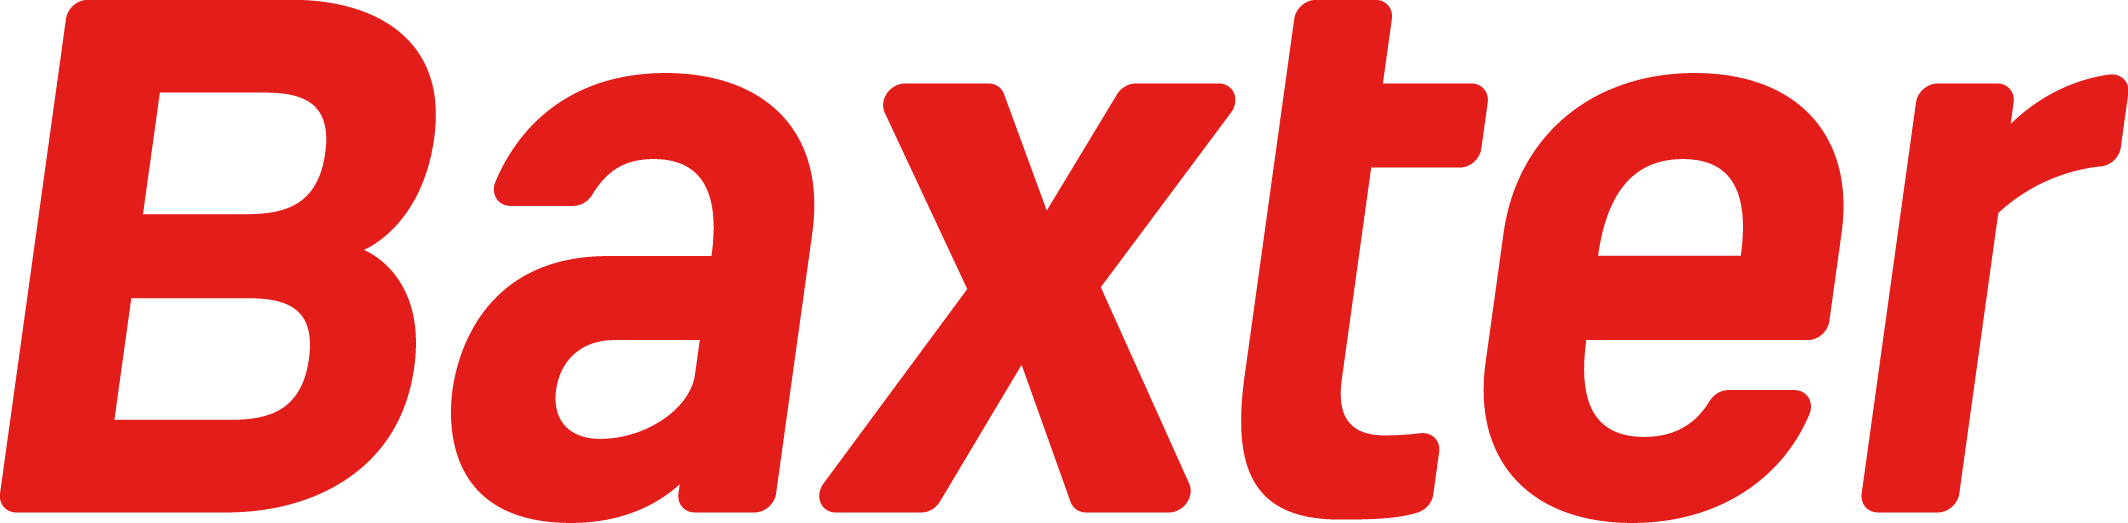 Baxter Logo Red Free Photo PNG Image